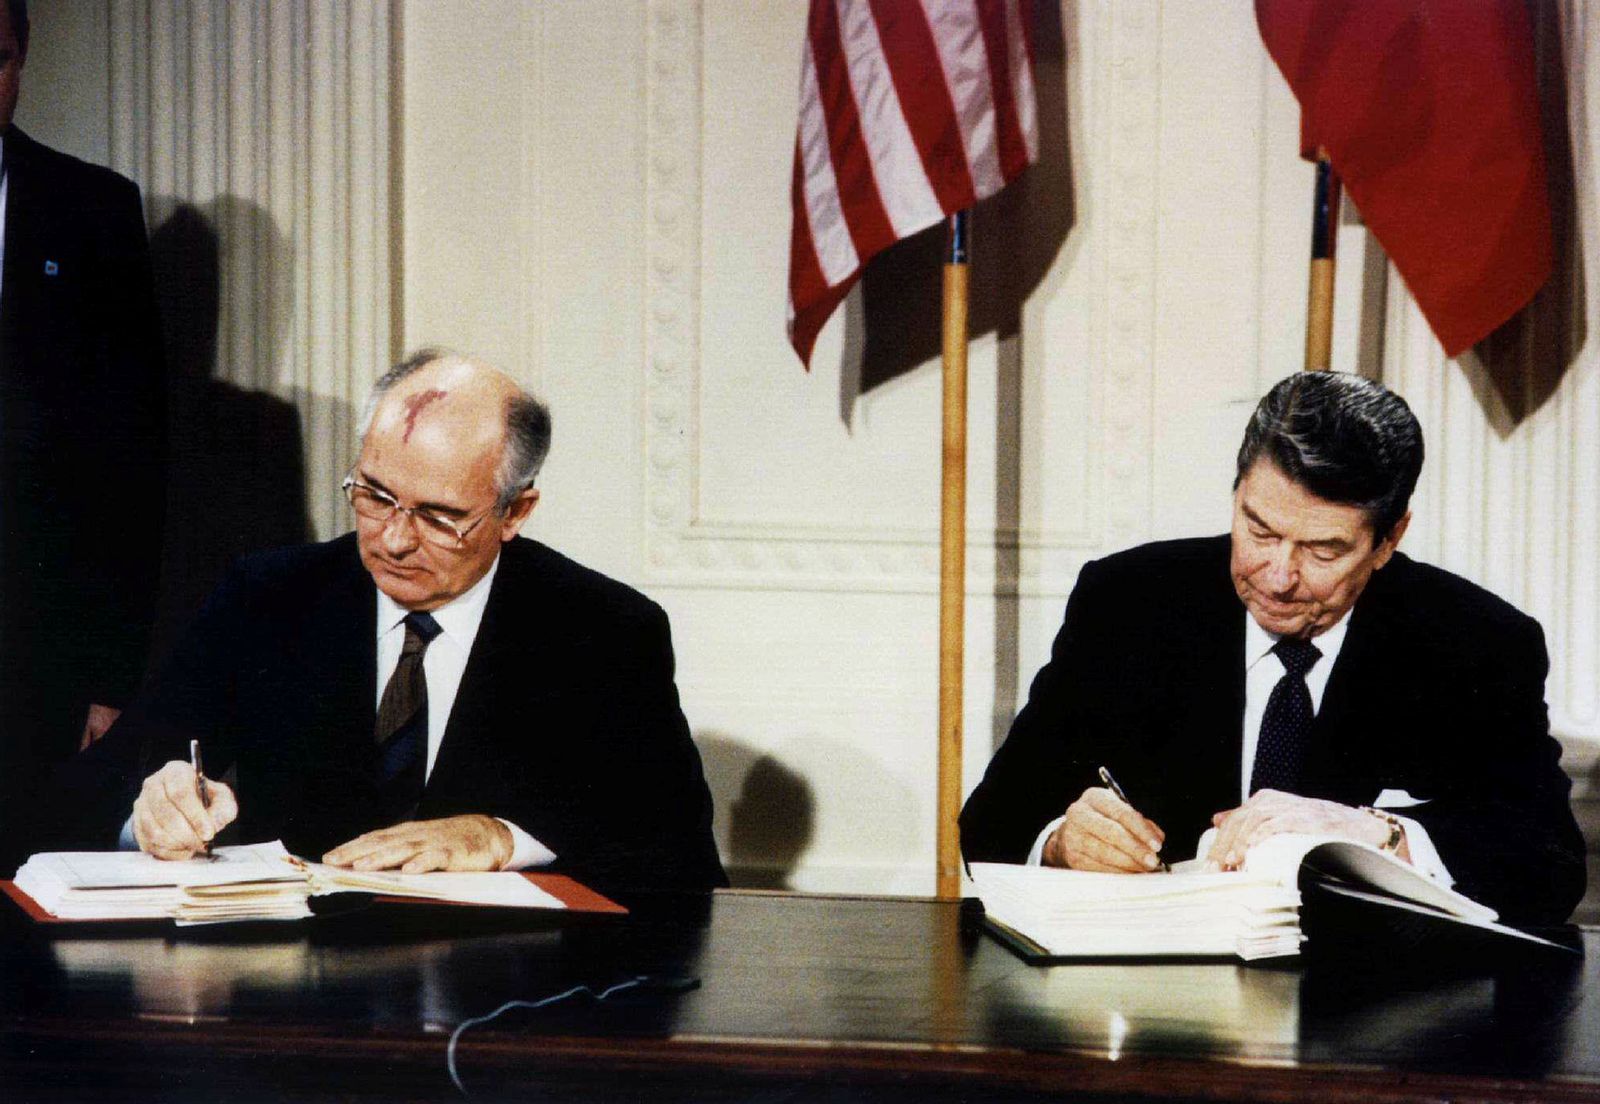 الرئيس الأميركي الراحل رونالد ريغان (يمين) والزعيم السوفياتي ميخائيل غورباتشوف يوقّعان معاهدة القوات النووية متوسطة المدى في البيت الأبيض - 8 ديسمبر 1987 - REUTERS